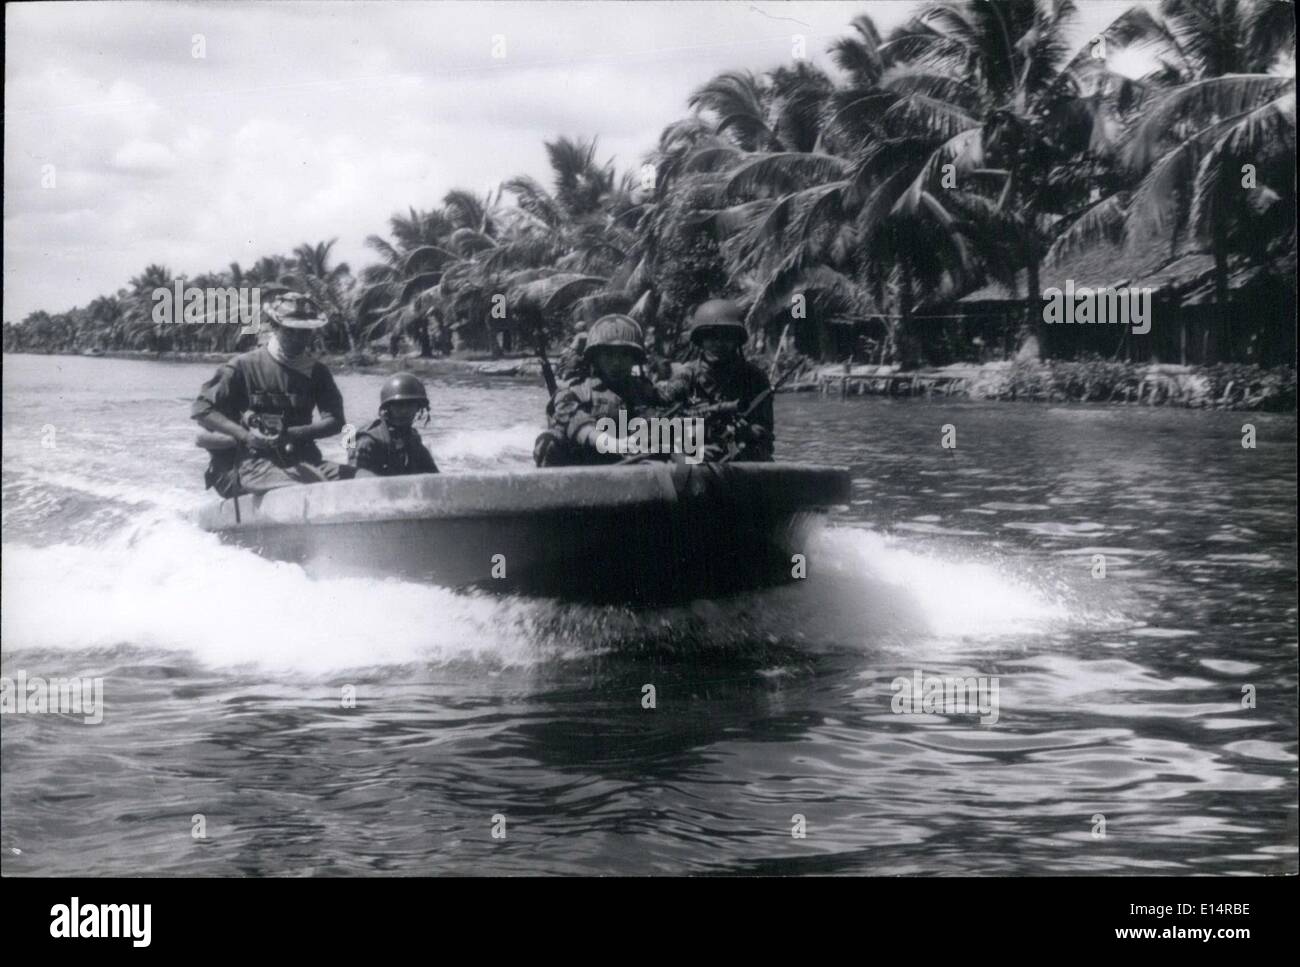 Apr. 18, 2012 - 21/2 anni della guerra in Vietnam - Vietnam Rangers patrol delta vie navigabili in cerca del Viet Congs, utilizzando motoscafi veloci con una mitragliatrice montata nella sua prua. Foto Stock